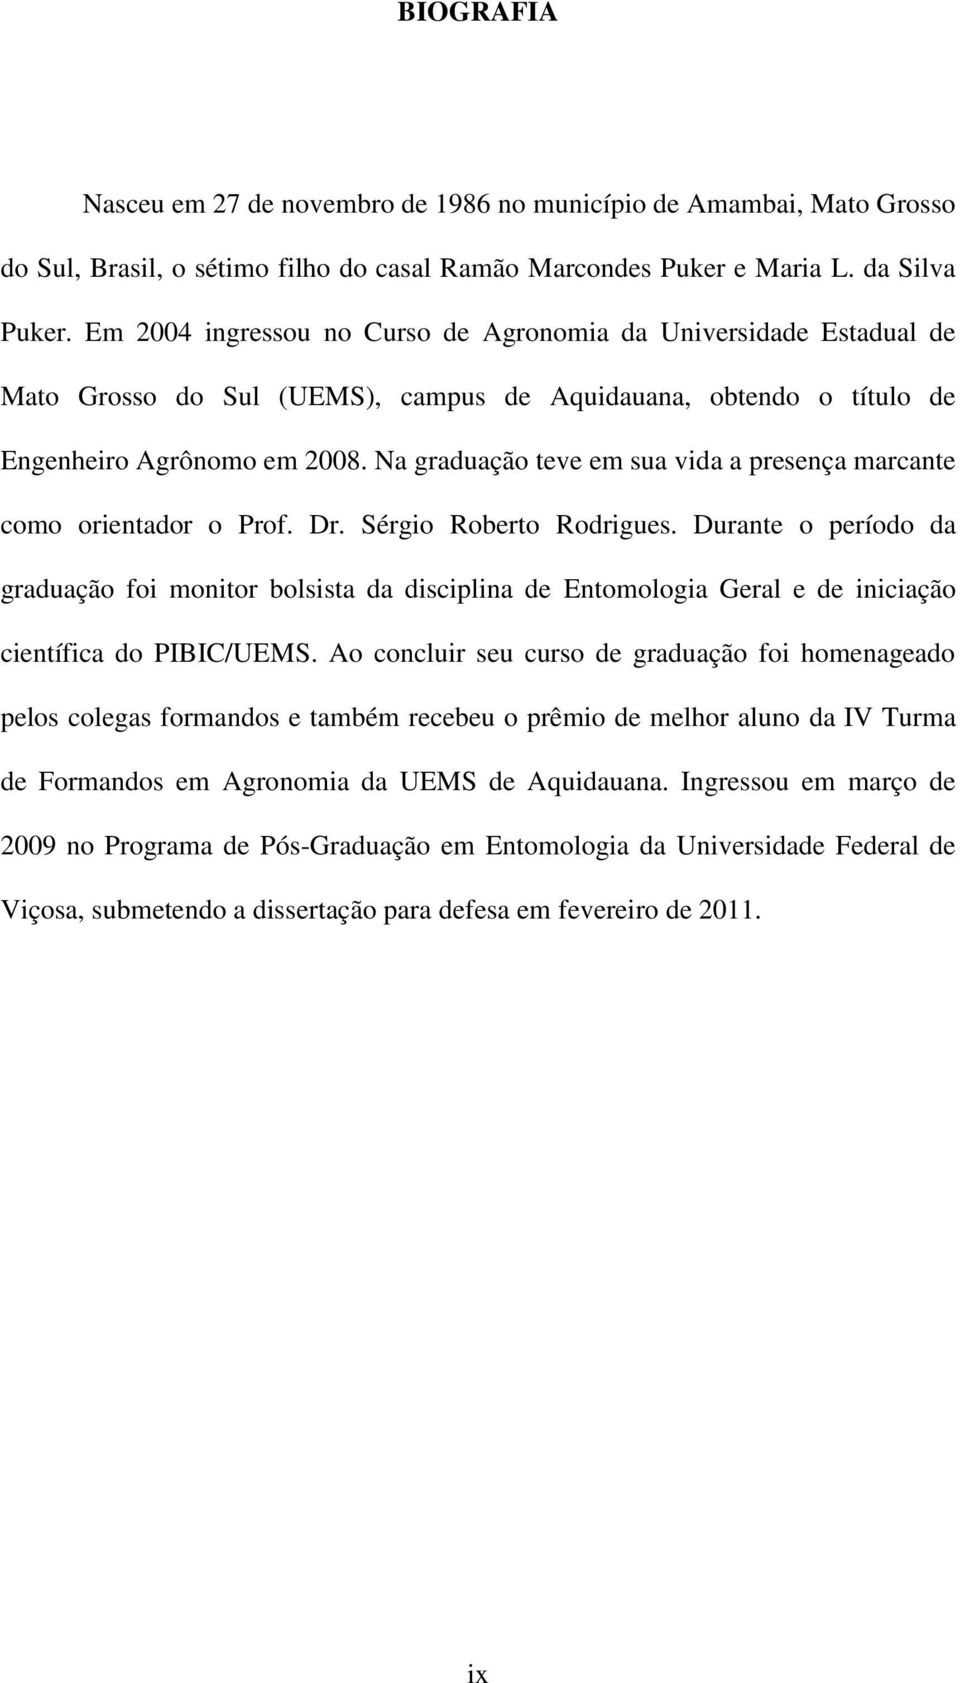 Na graduação teve em sua vida a presença marcante como orientador o Prof. Dr. Sérgio Roberto Rodrigues.